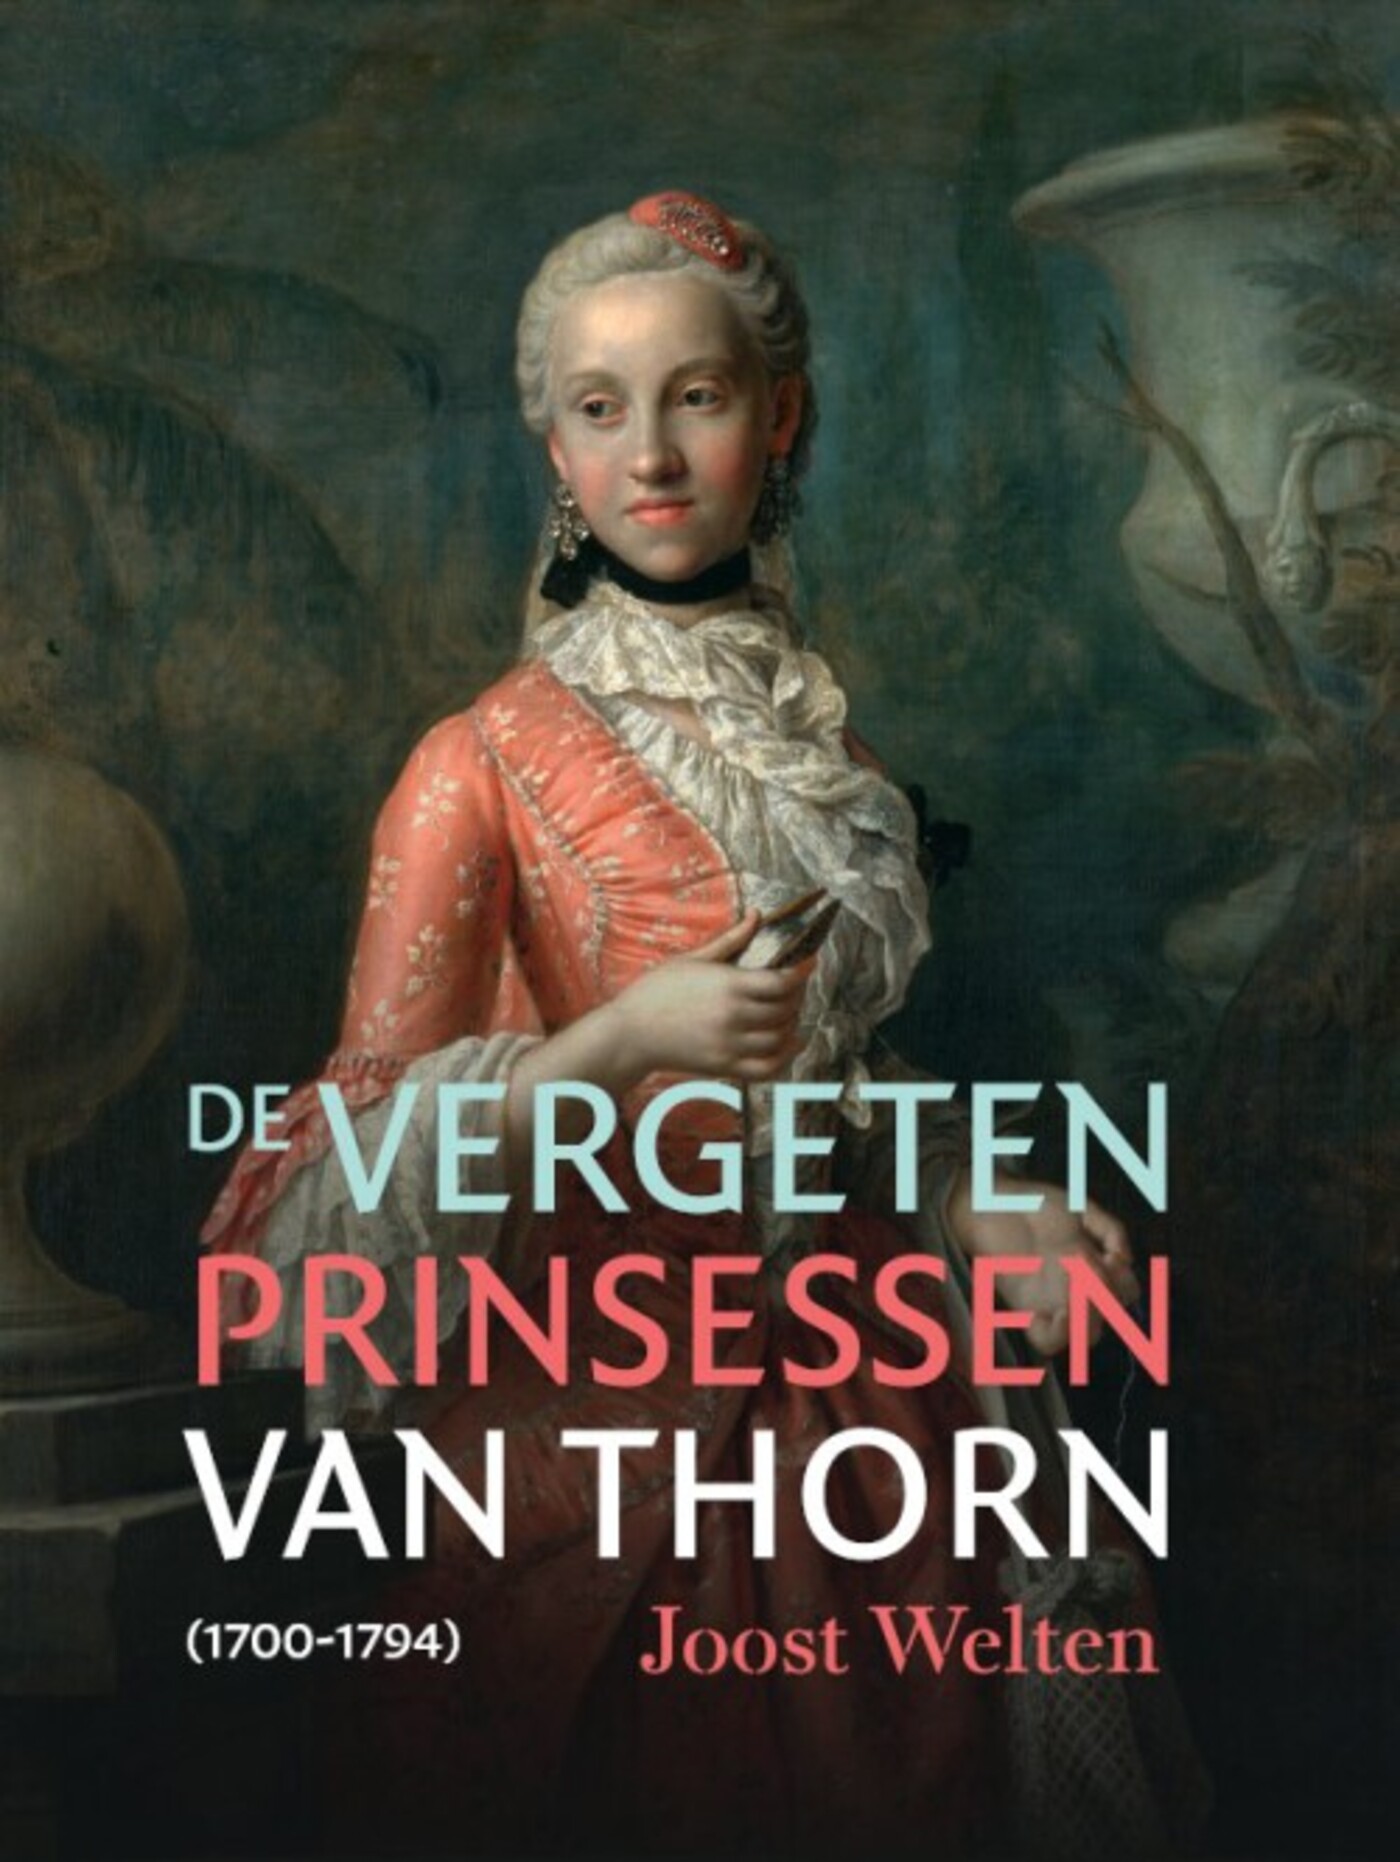 Joost Welten over zijn boek 'De vergeten prinsessen van Thorn'